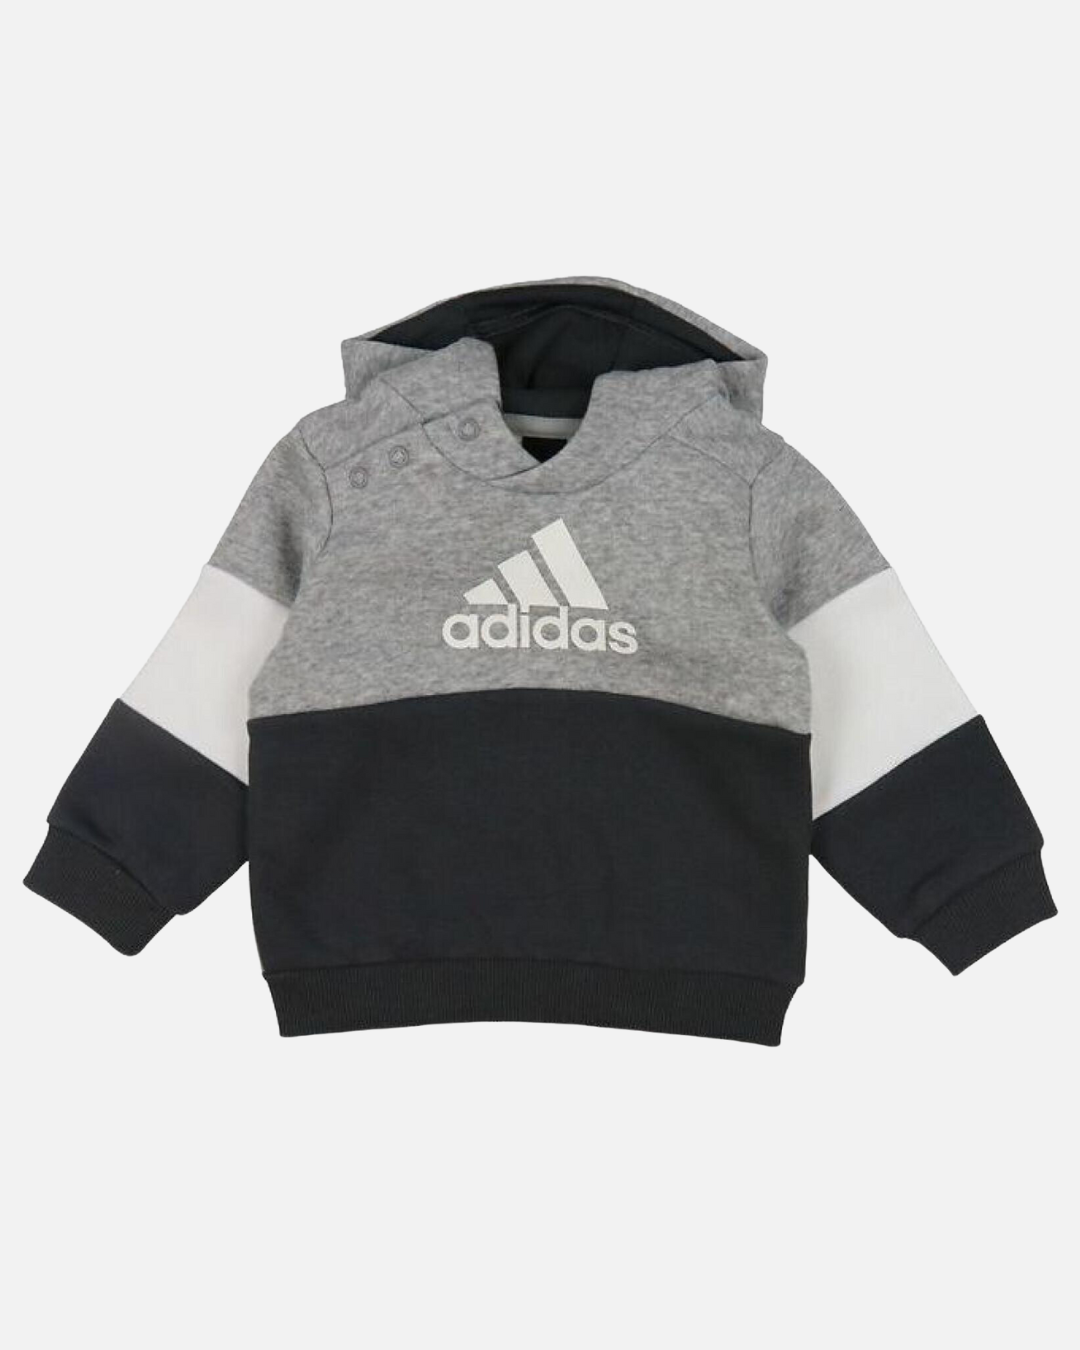 Adidas Baby Tracksuit Set - Grey/White/Black